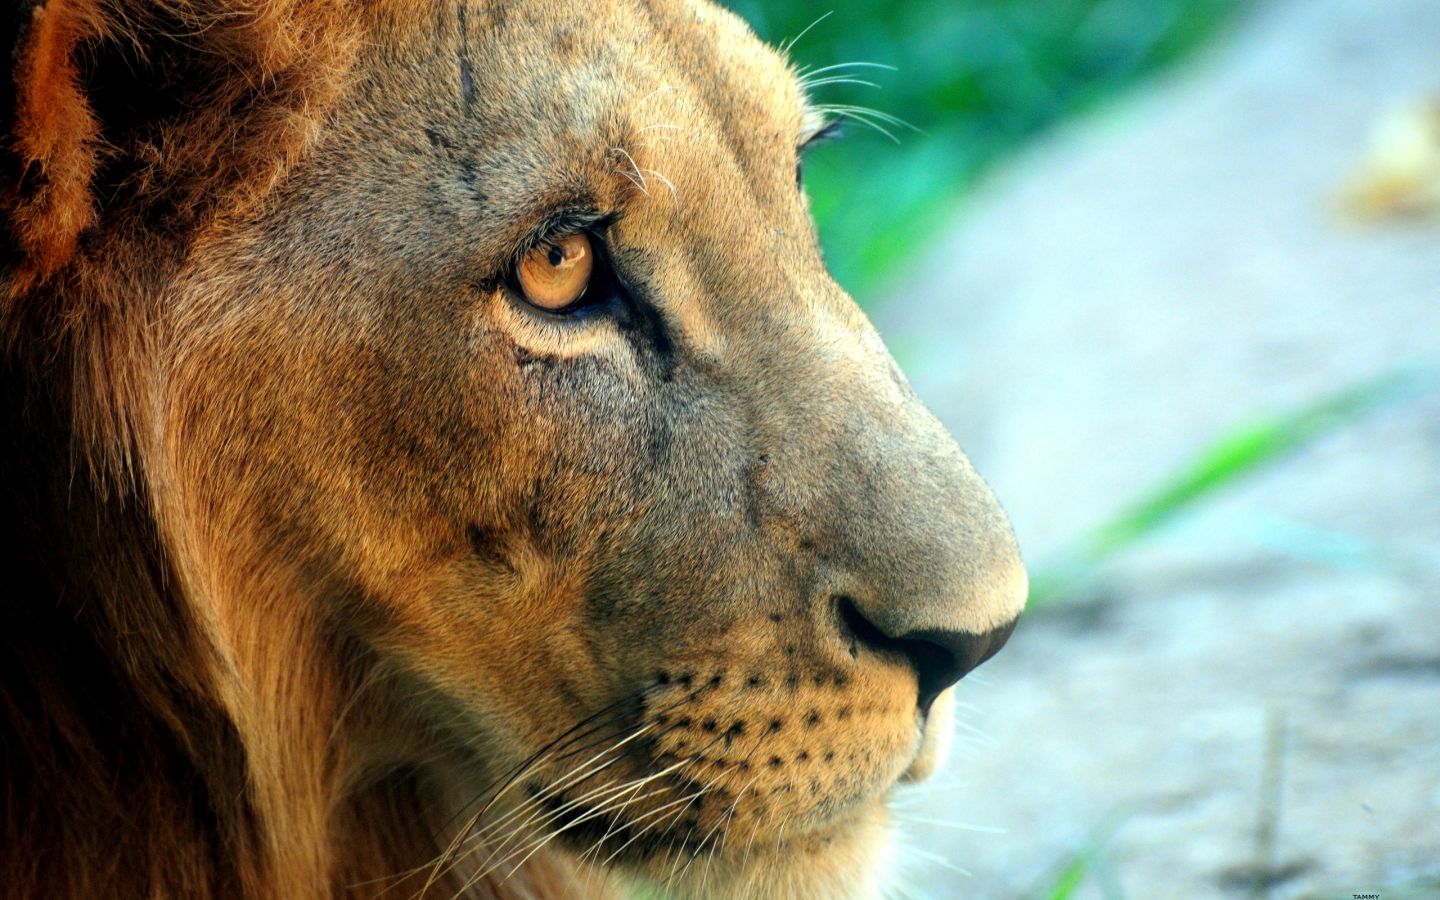 Fierce Lion for 1440 x 900 widescreen resolution